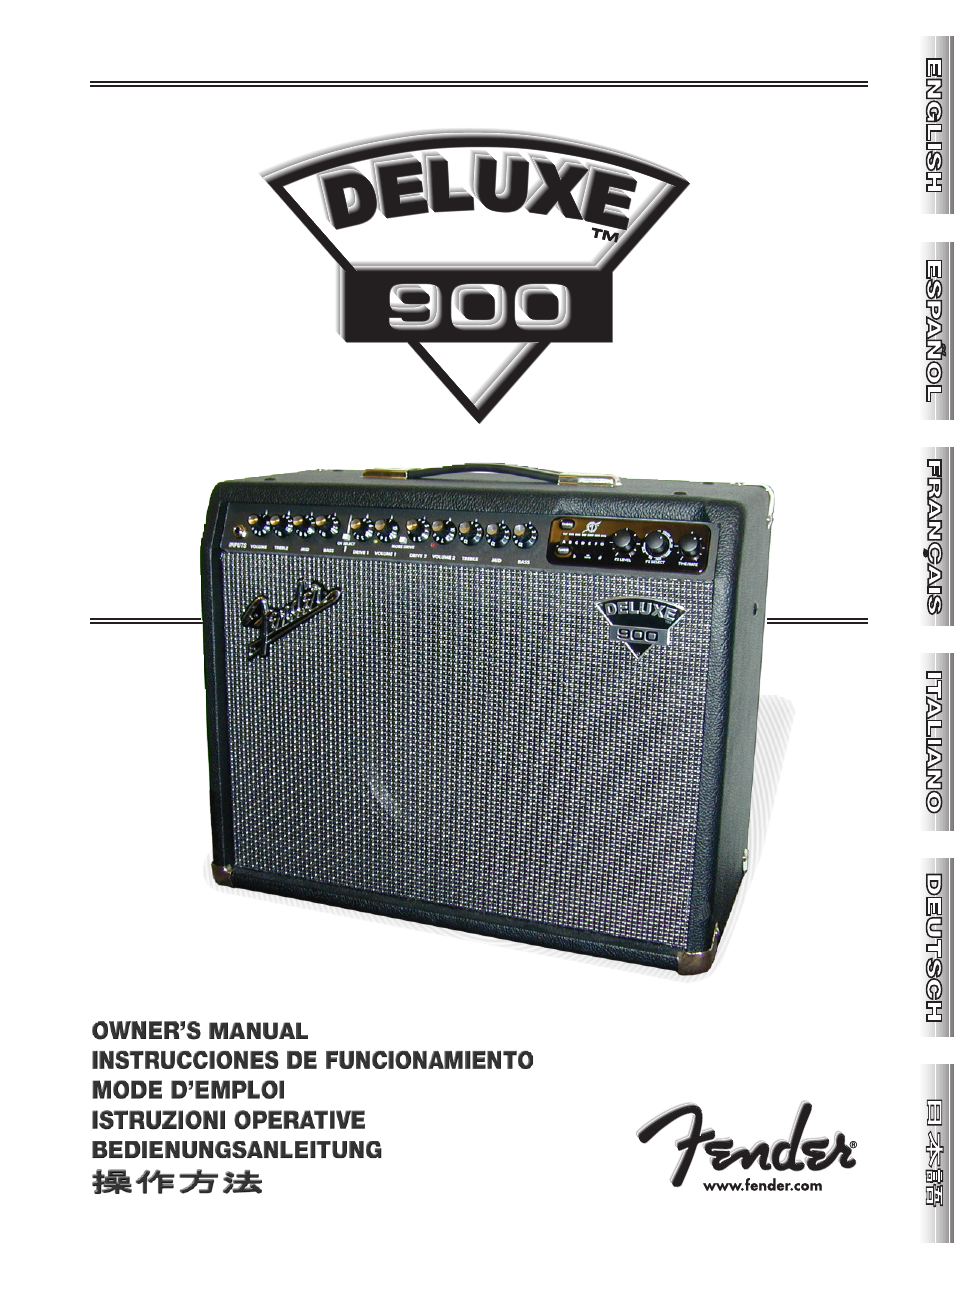 Deluxe 900